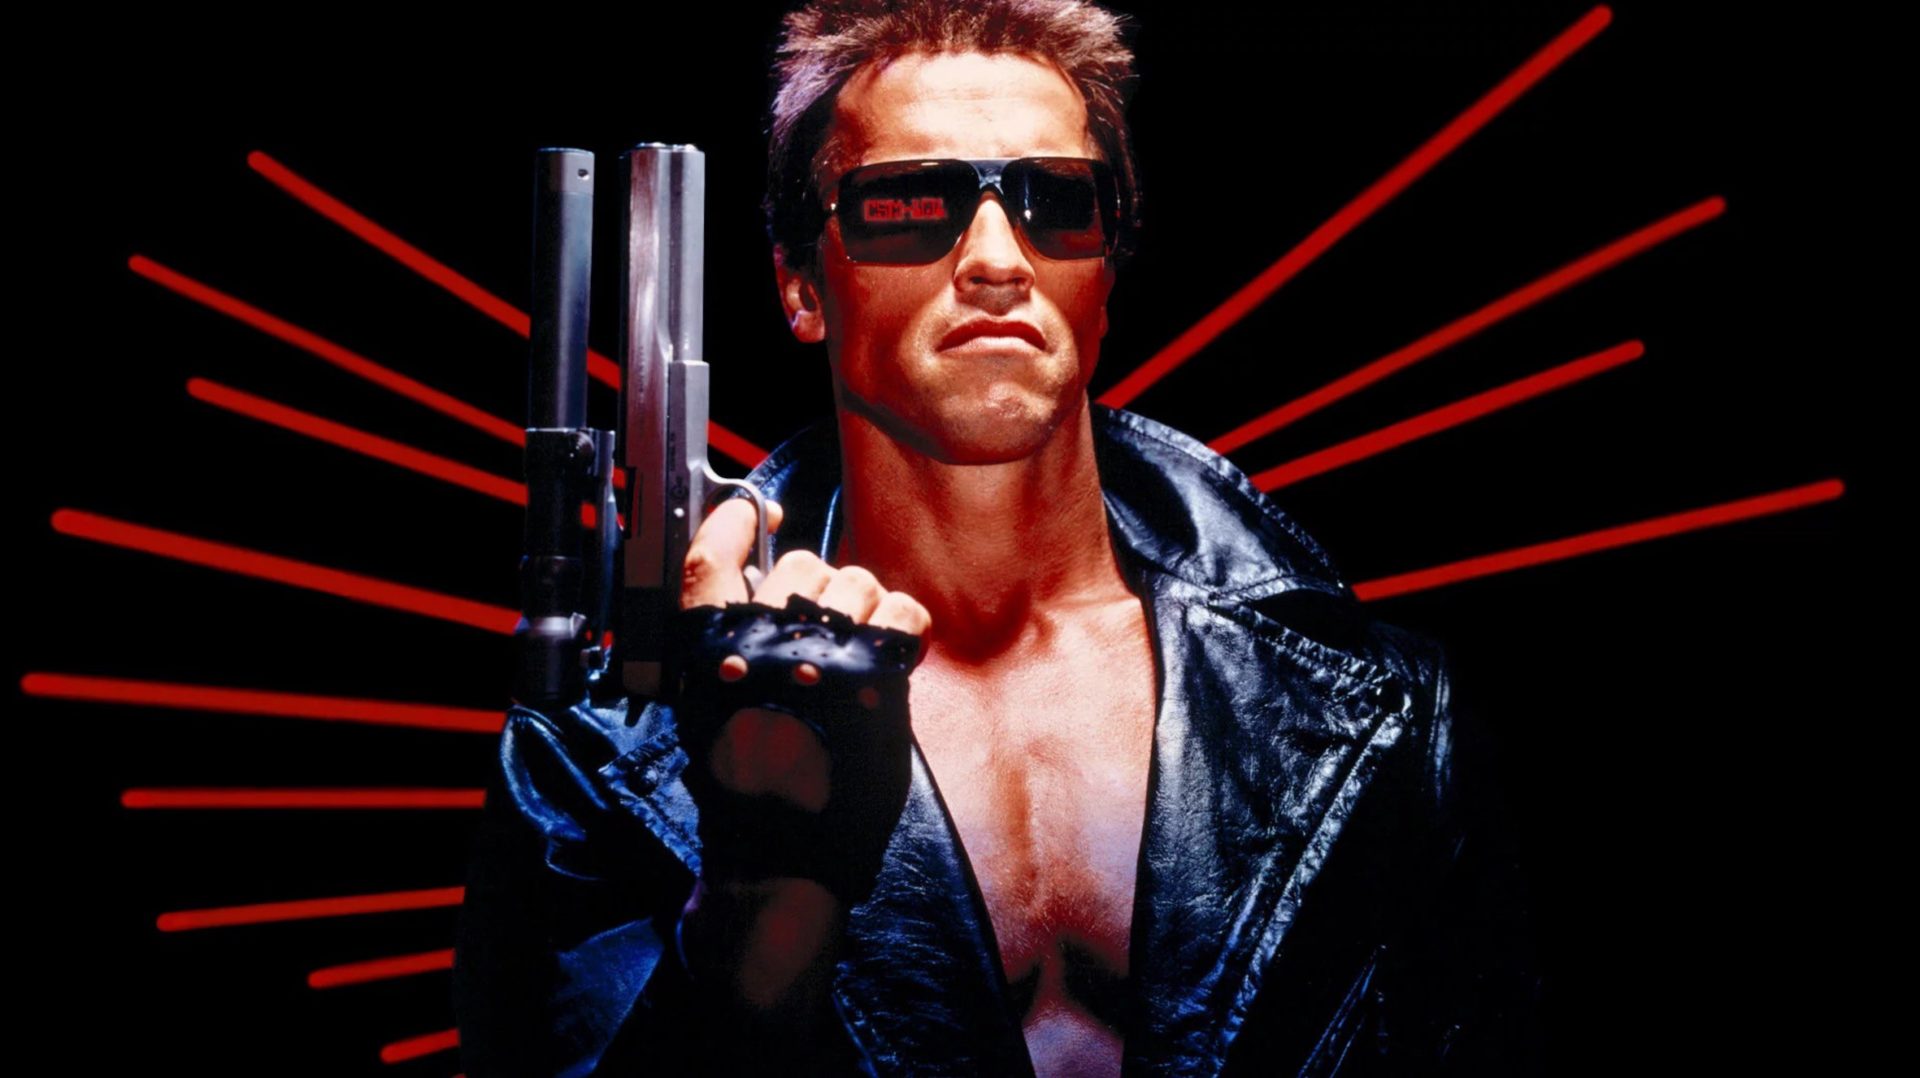 Fãs acham que filho de Schwarzenegger é o novo Exterminador do Futuro